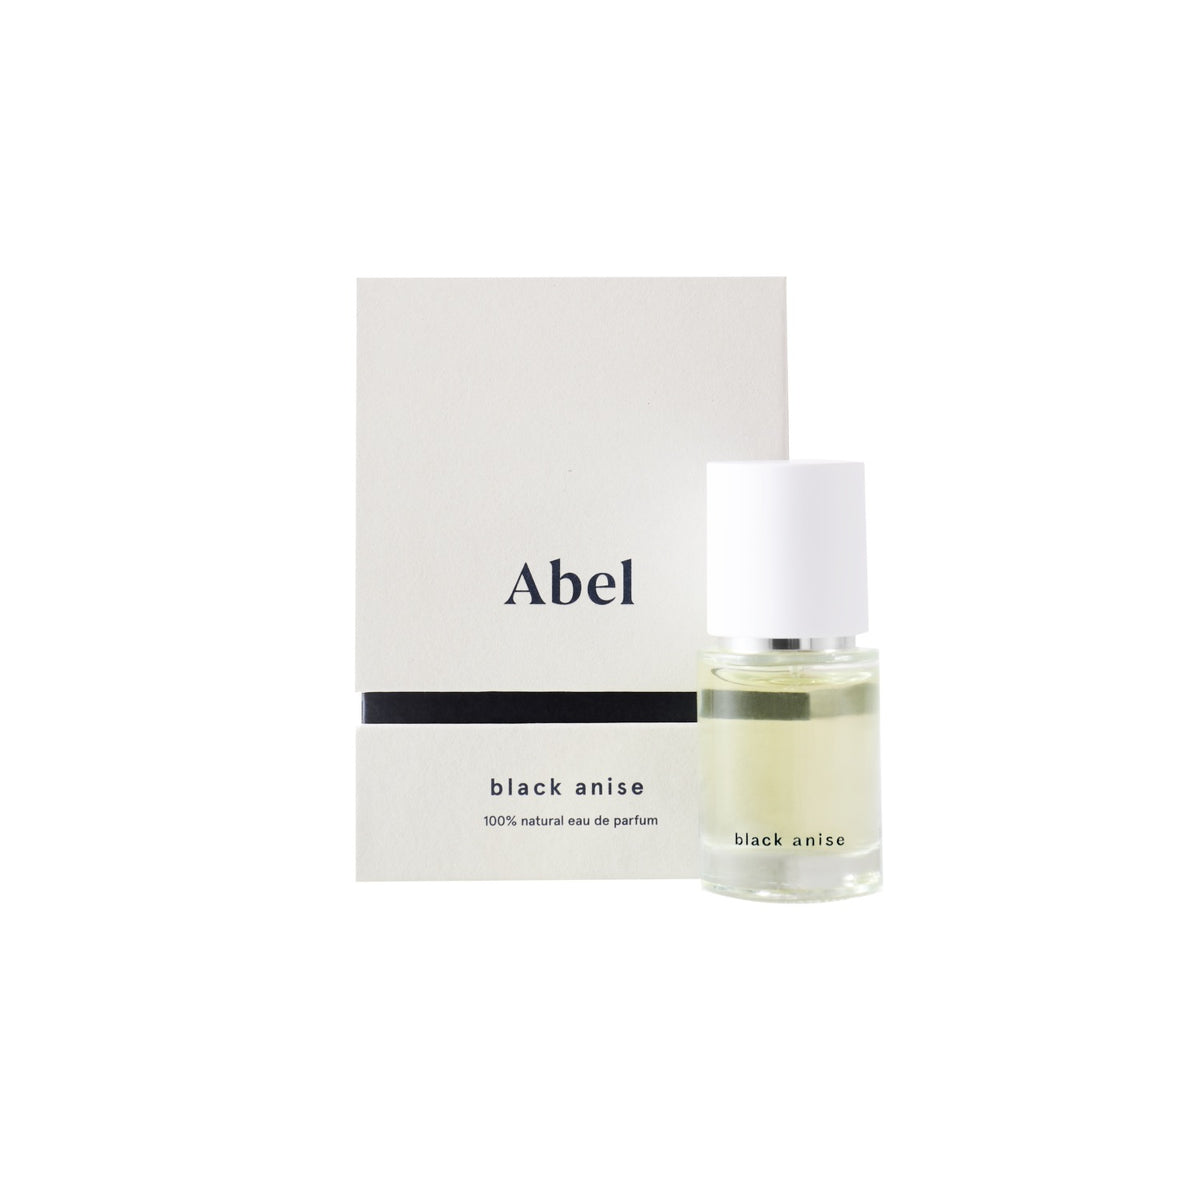 Abel Black Anise eau de toilette with sultry scent, vibrant notes.